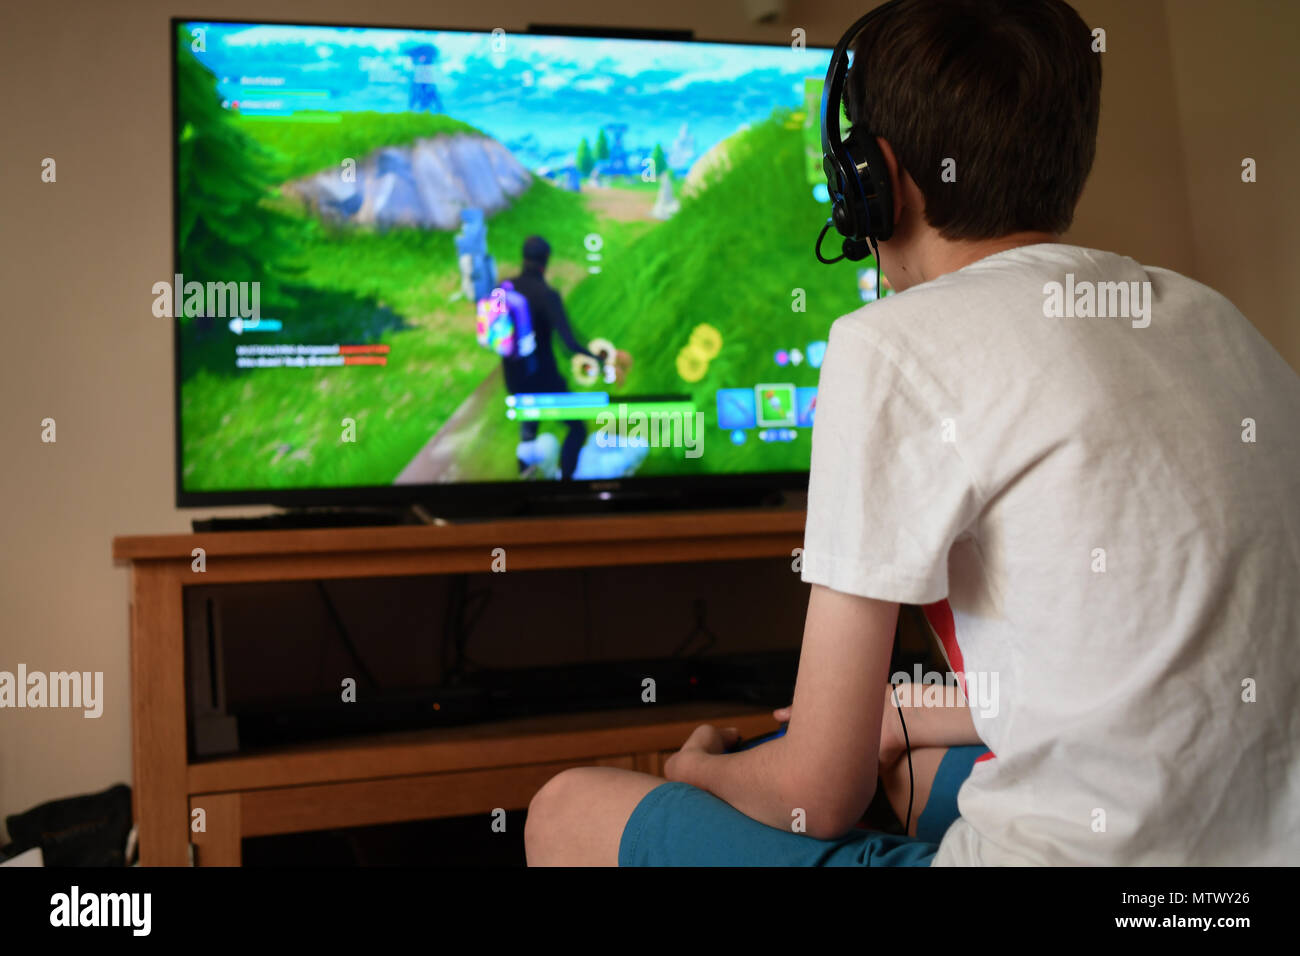 Ein Teenager Alter 13 spielt Fortnite computer spiel auf der PS4 über ein Headset mit anderen Spielern in seine Gruppe zu kommunizieren. Stockfoto